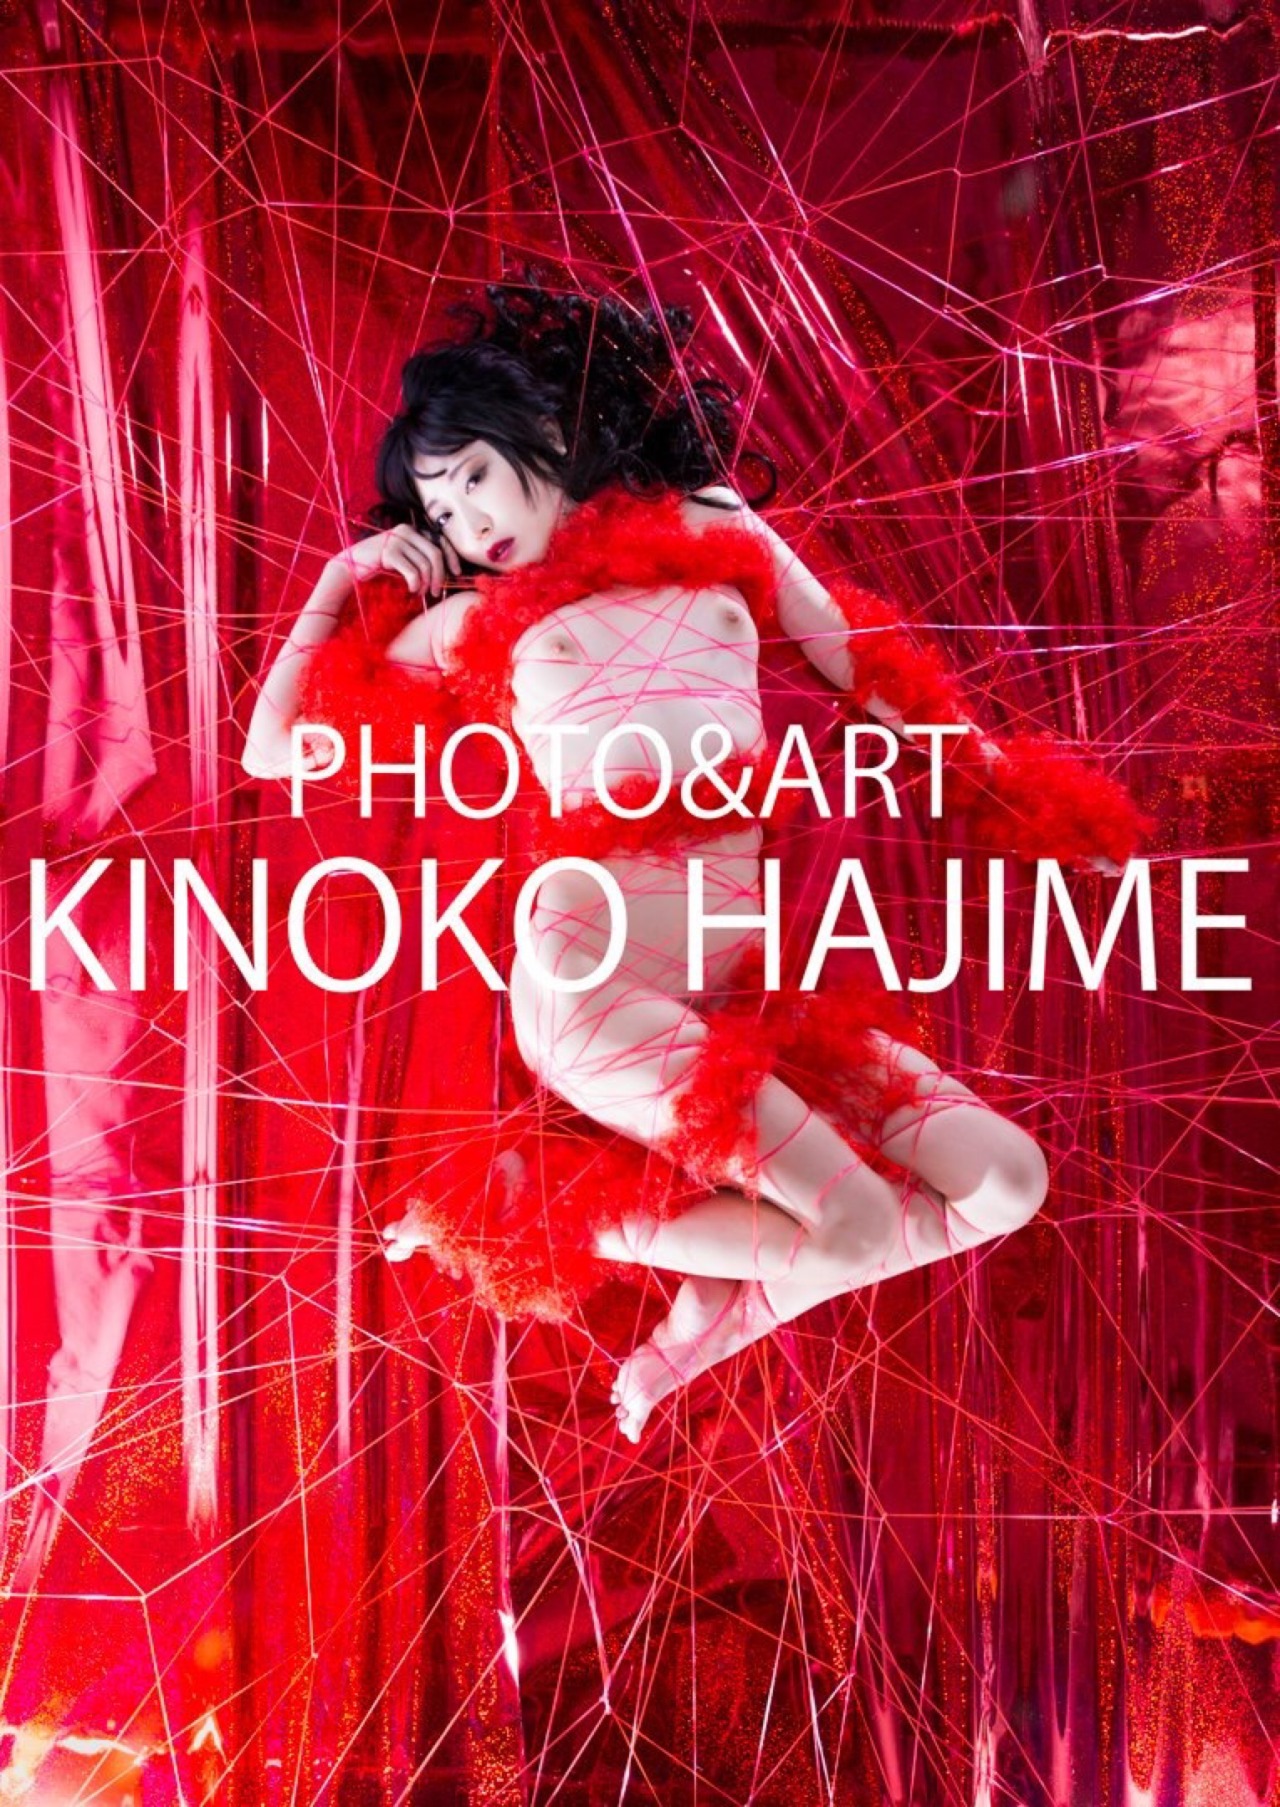 kinokohajime:  Kinoko Haiime Art Workhttp://shibari.jp I am photographer and rope